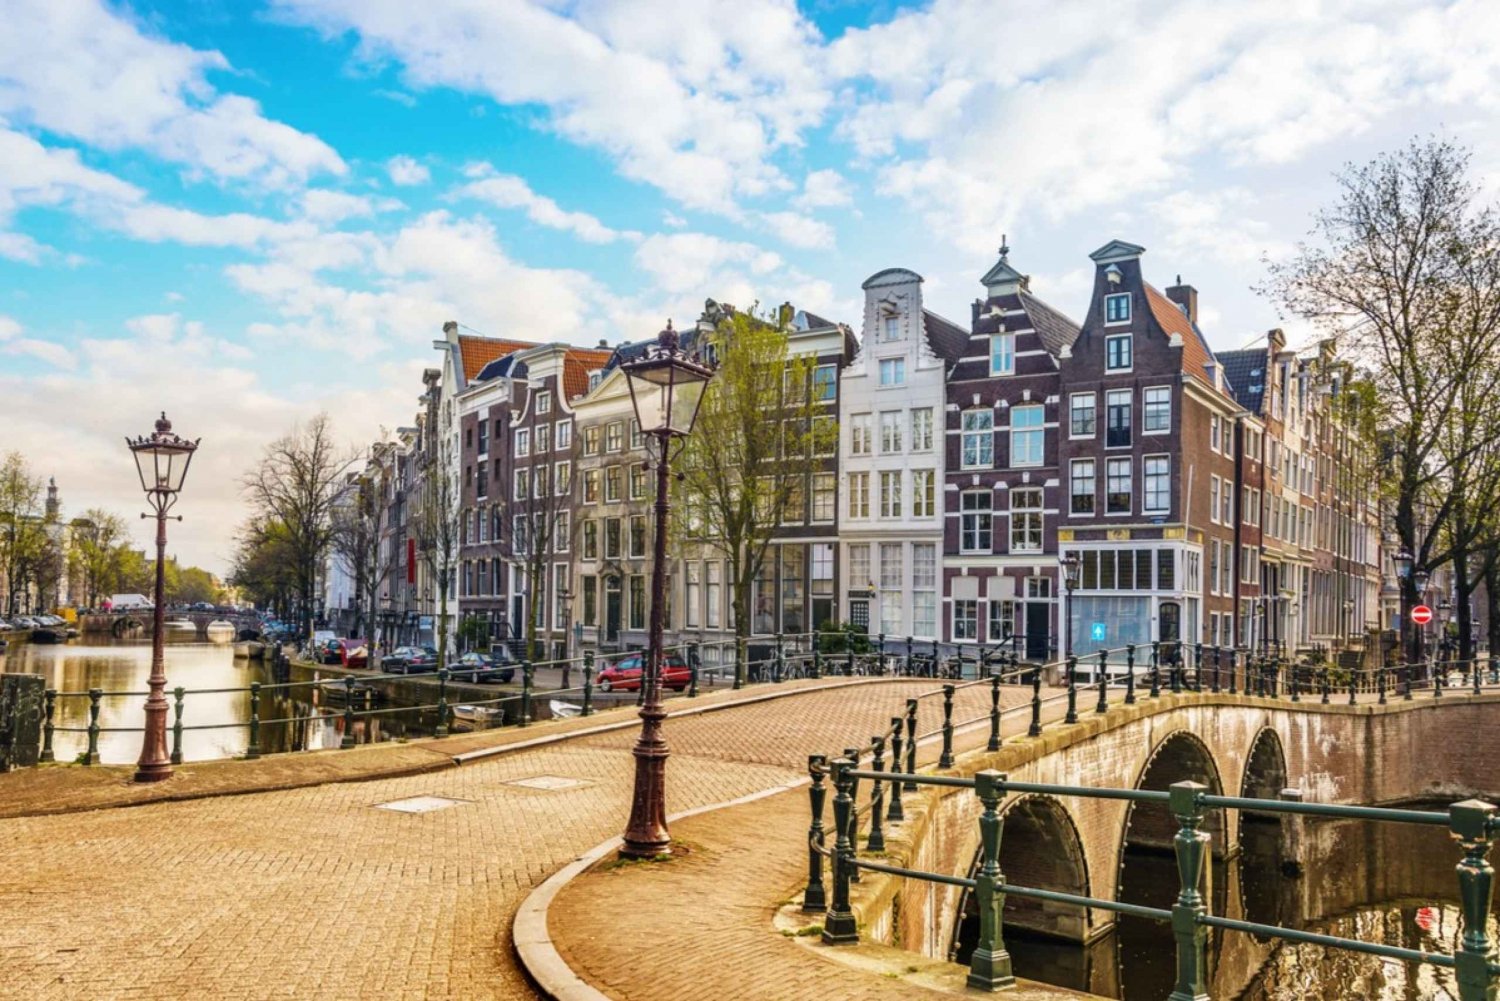 Amsterdams gamleby: Opplevelse av sjømannens skattejakt